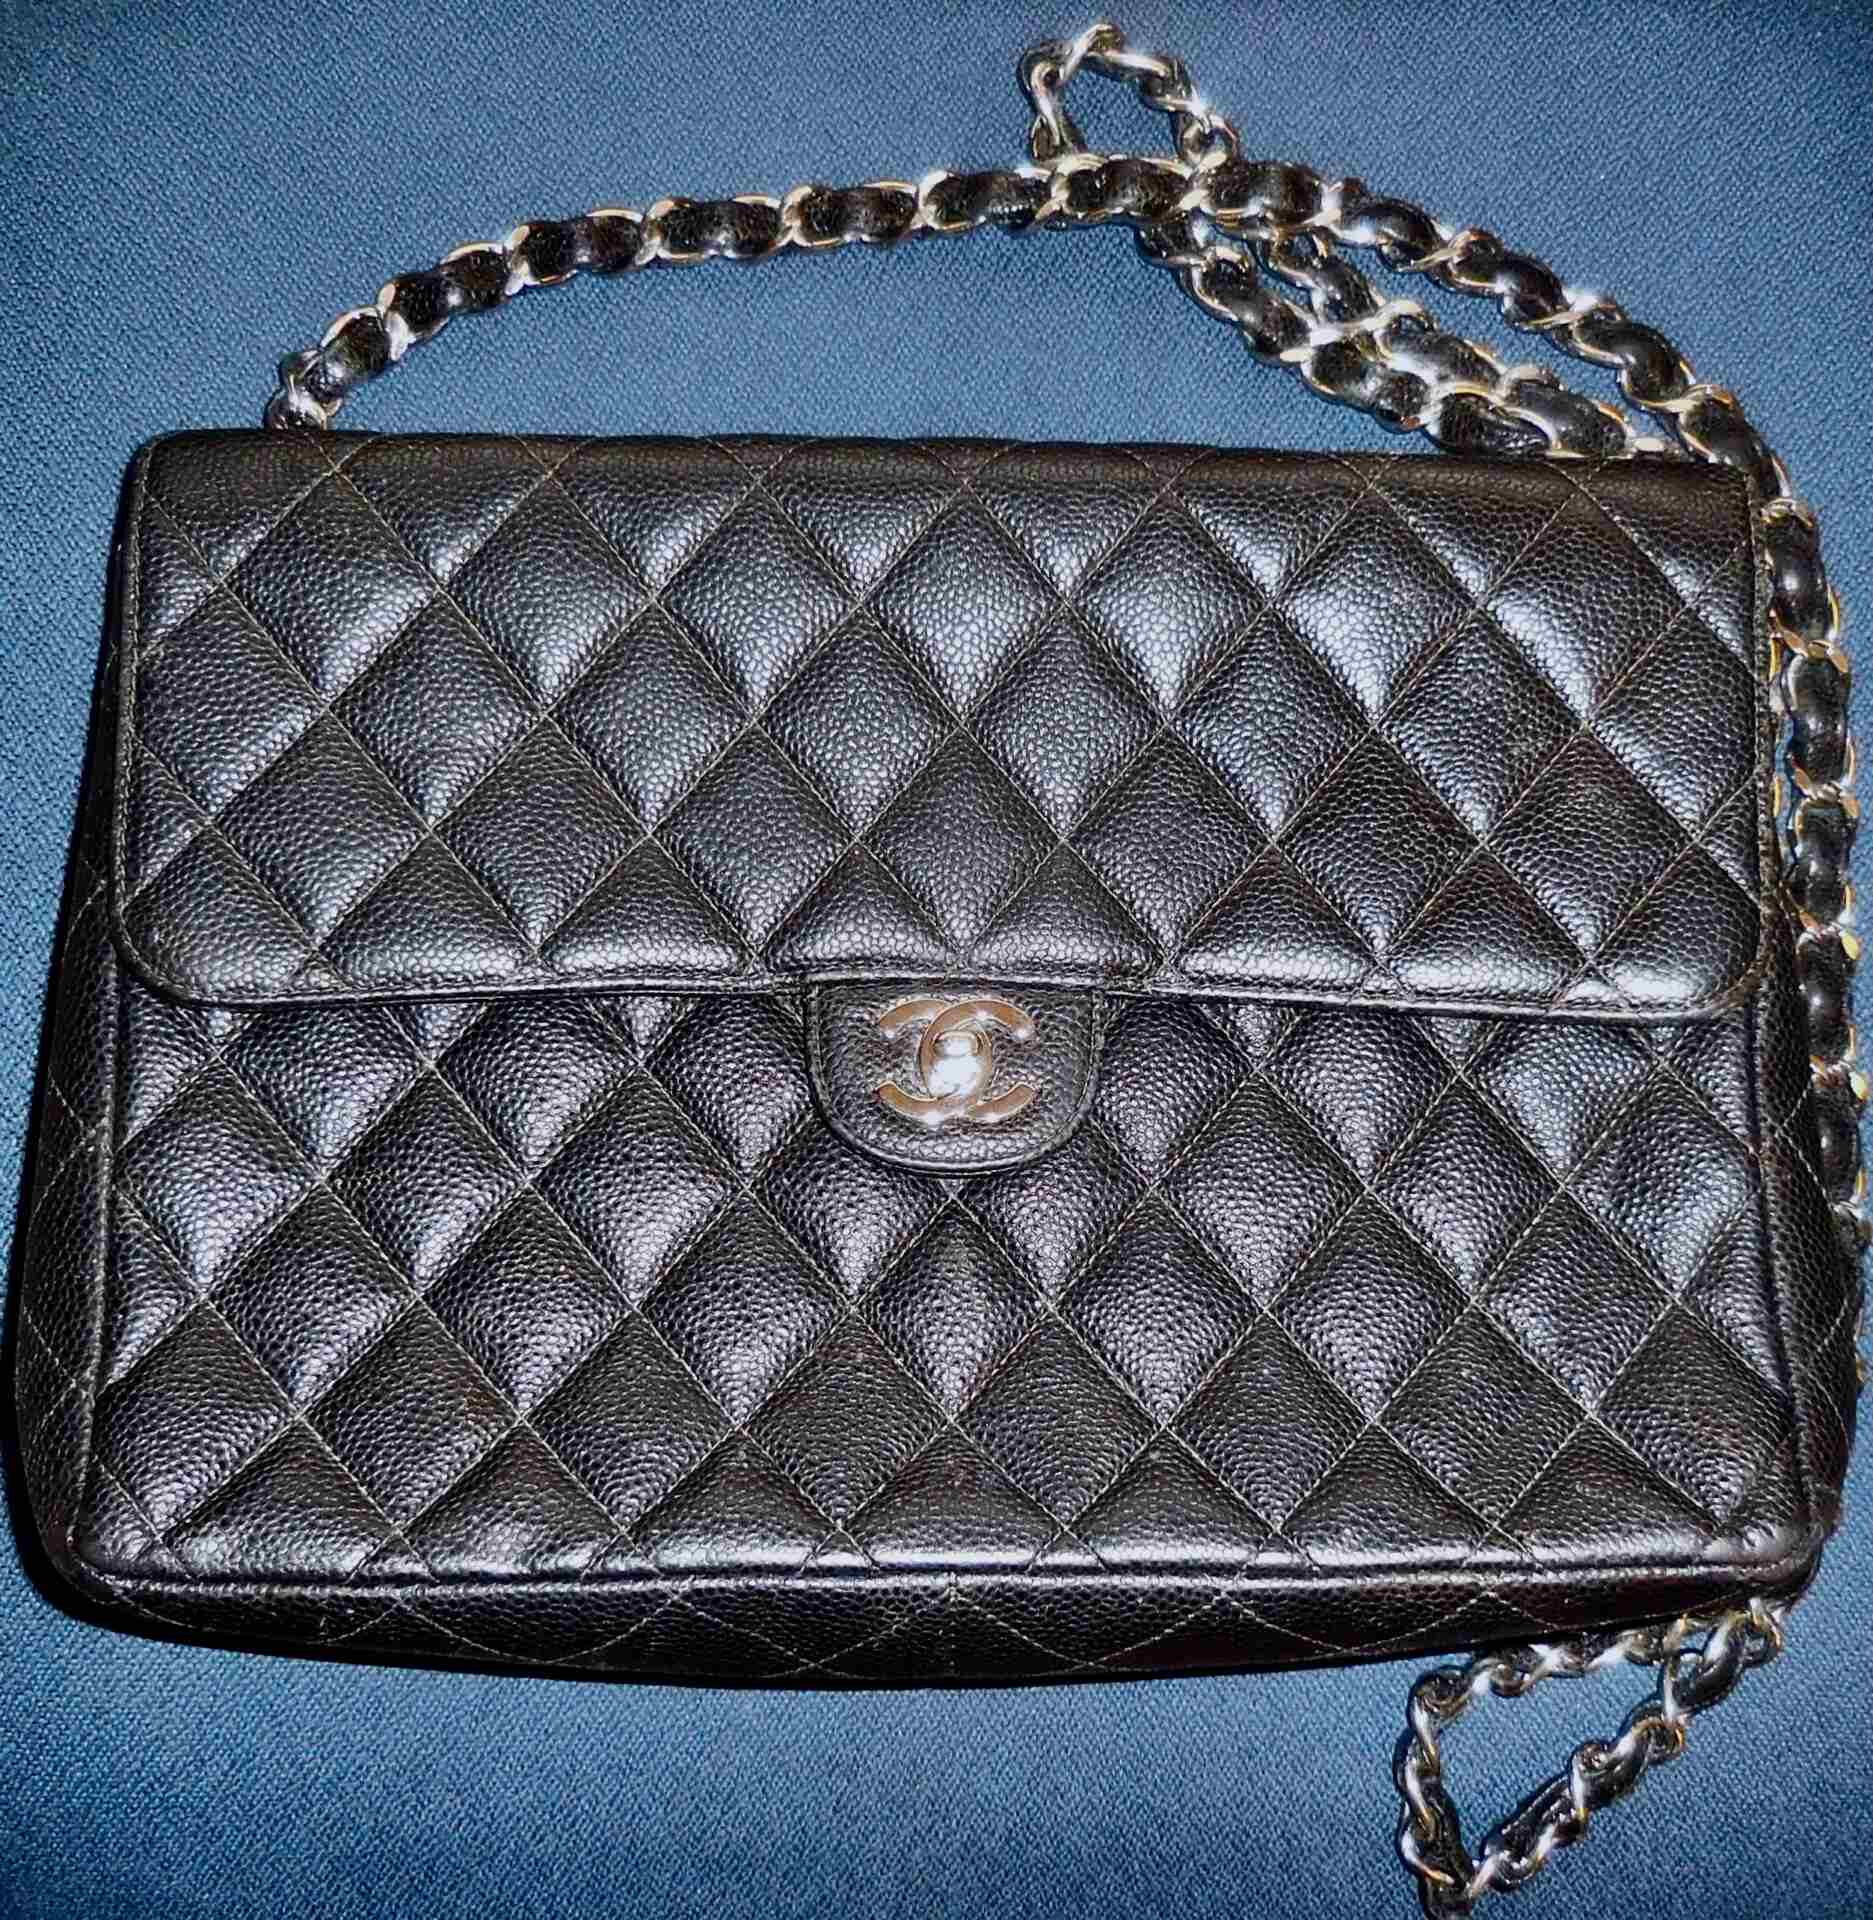 Chanel - Handbag Repairs by Linda LLC